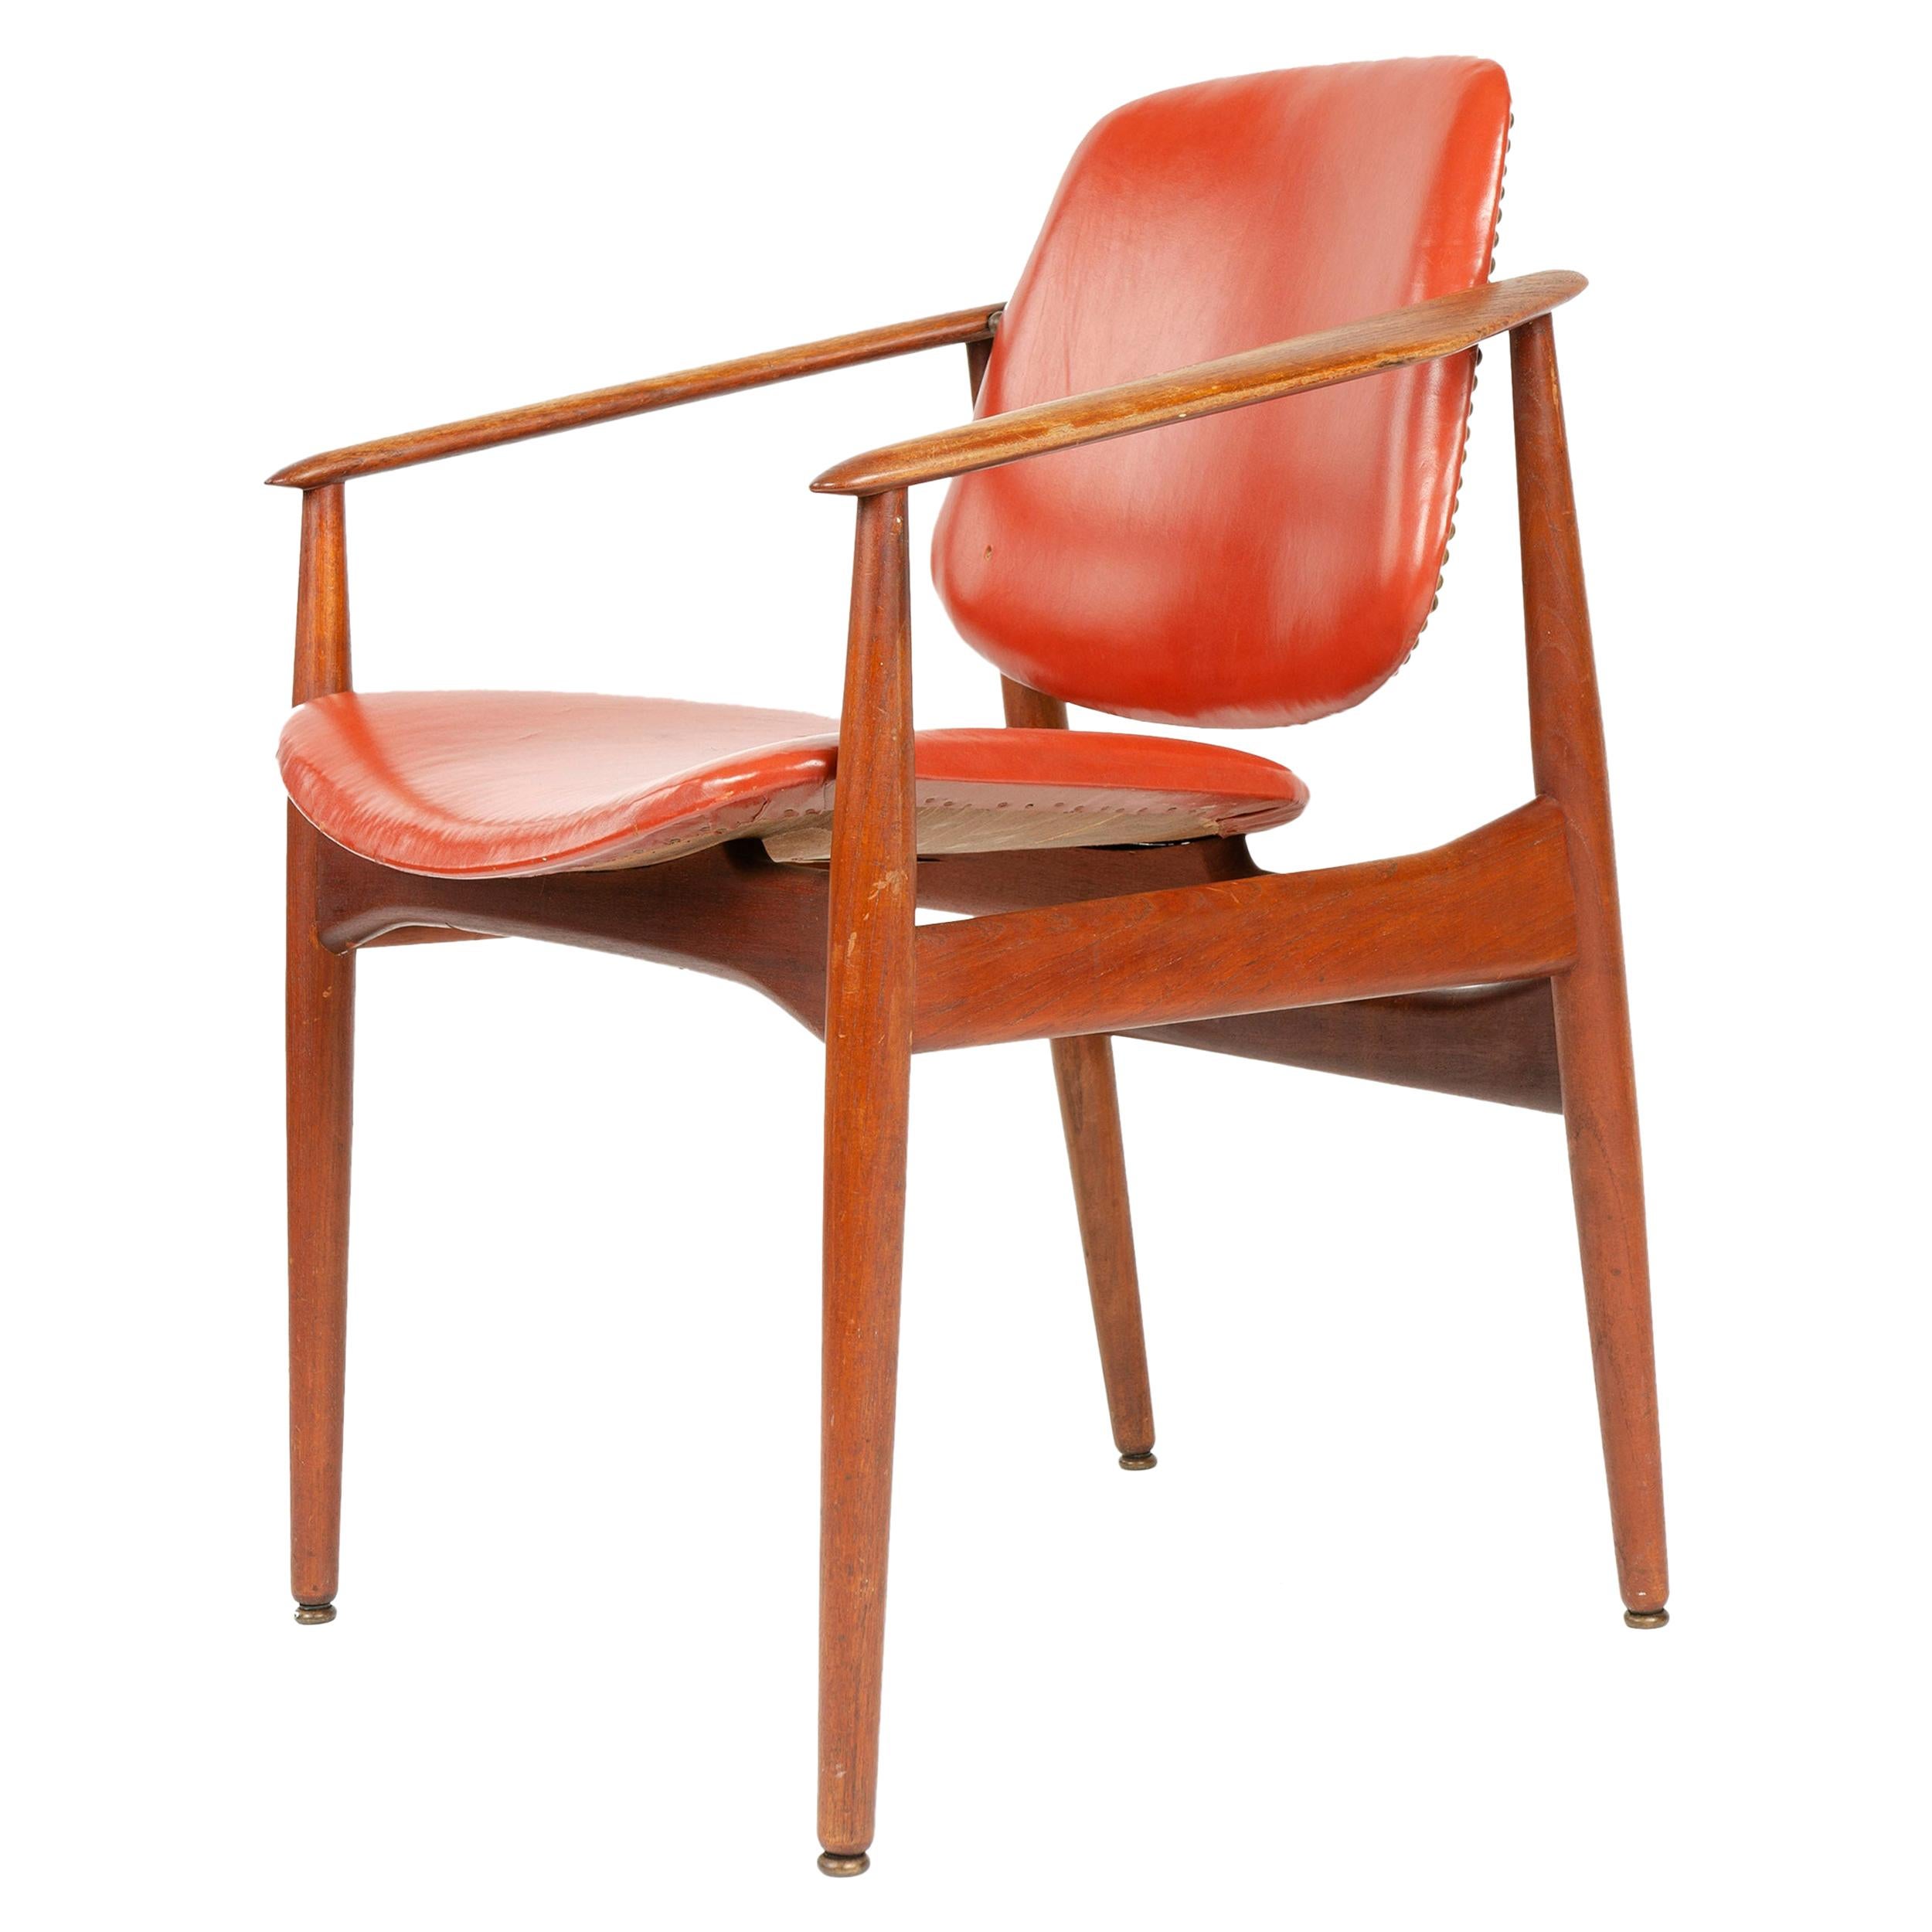 1950s Danish Solid Teak Dining Chair by Arne Vodder for France & Daverkosen